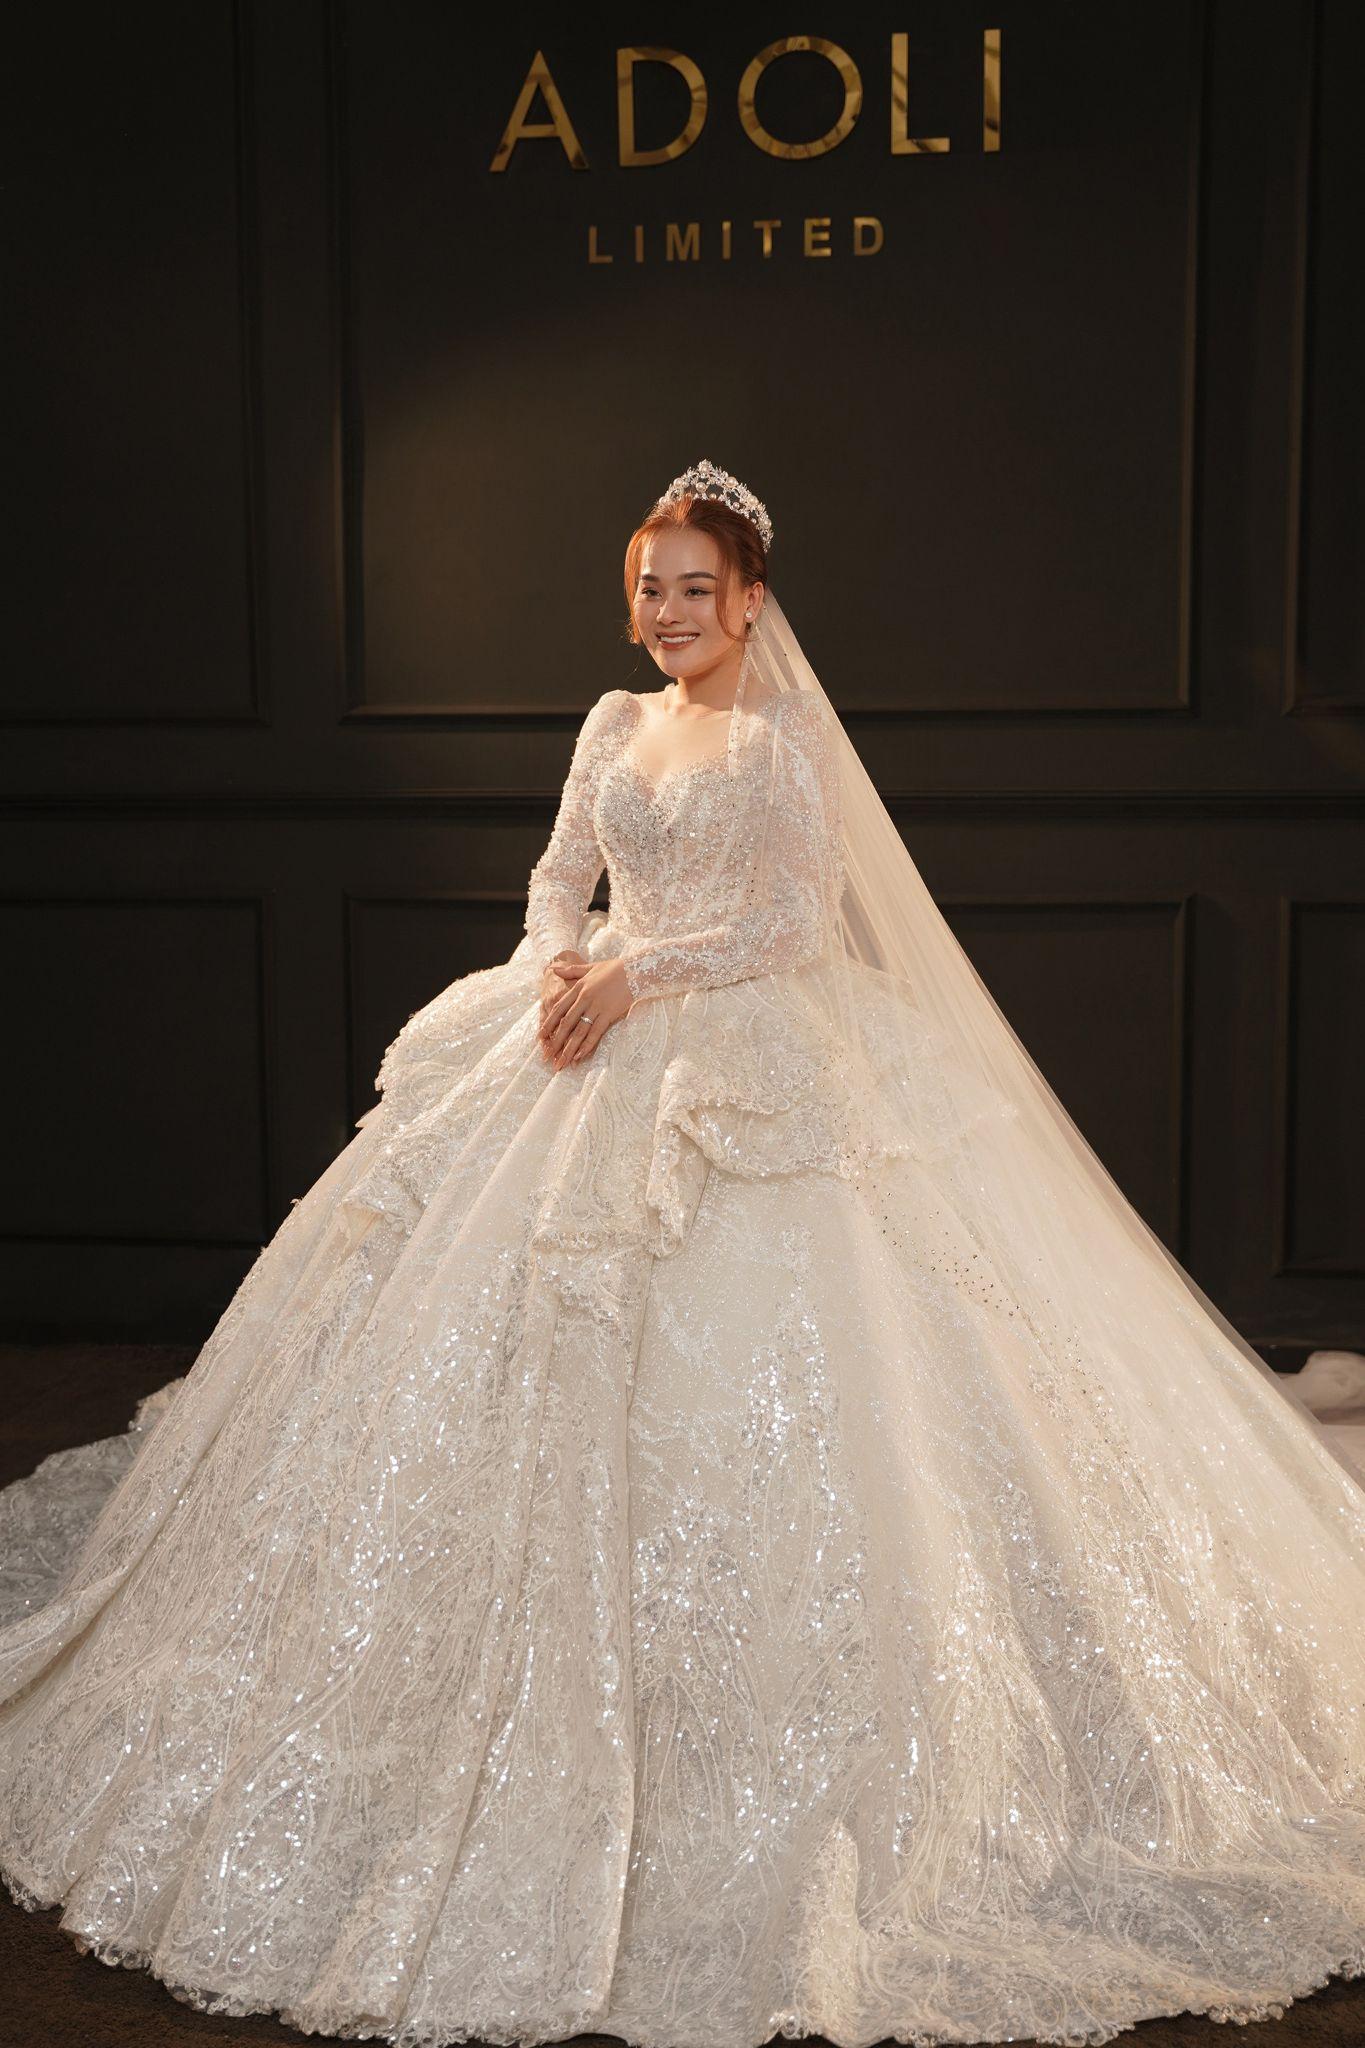 “Thánh Sún” Ngân Thảo nổi bật trong ngày trọng đại với bộ váy cưới 100 triệu đồng đến từ thương hiệu ADOLI - Ảnh 2.